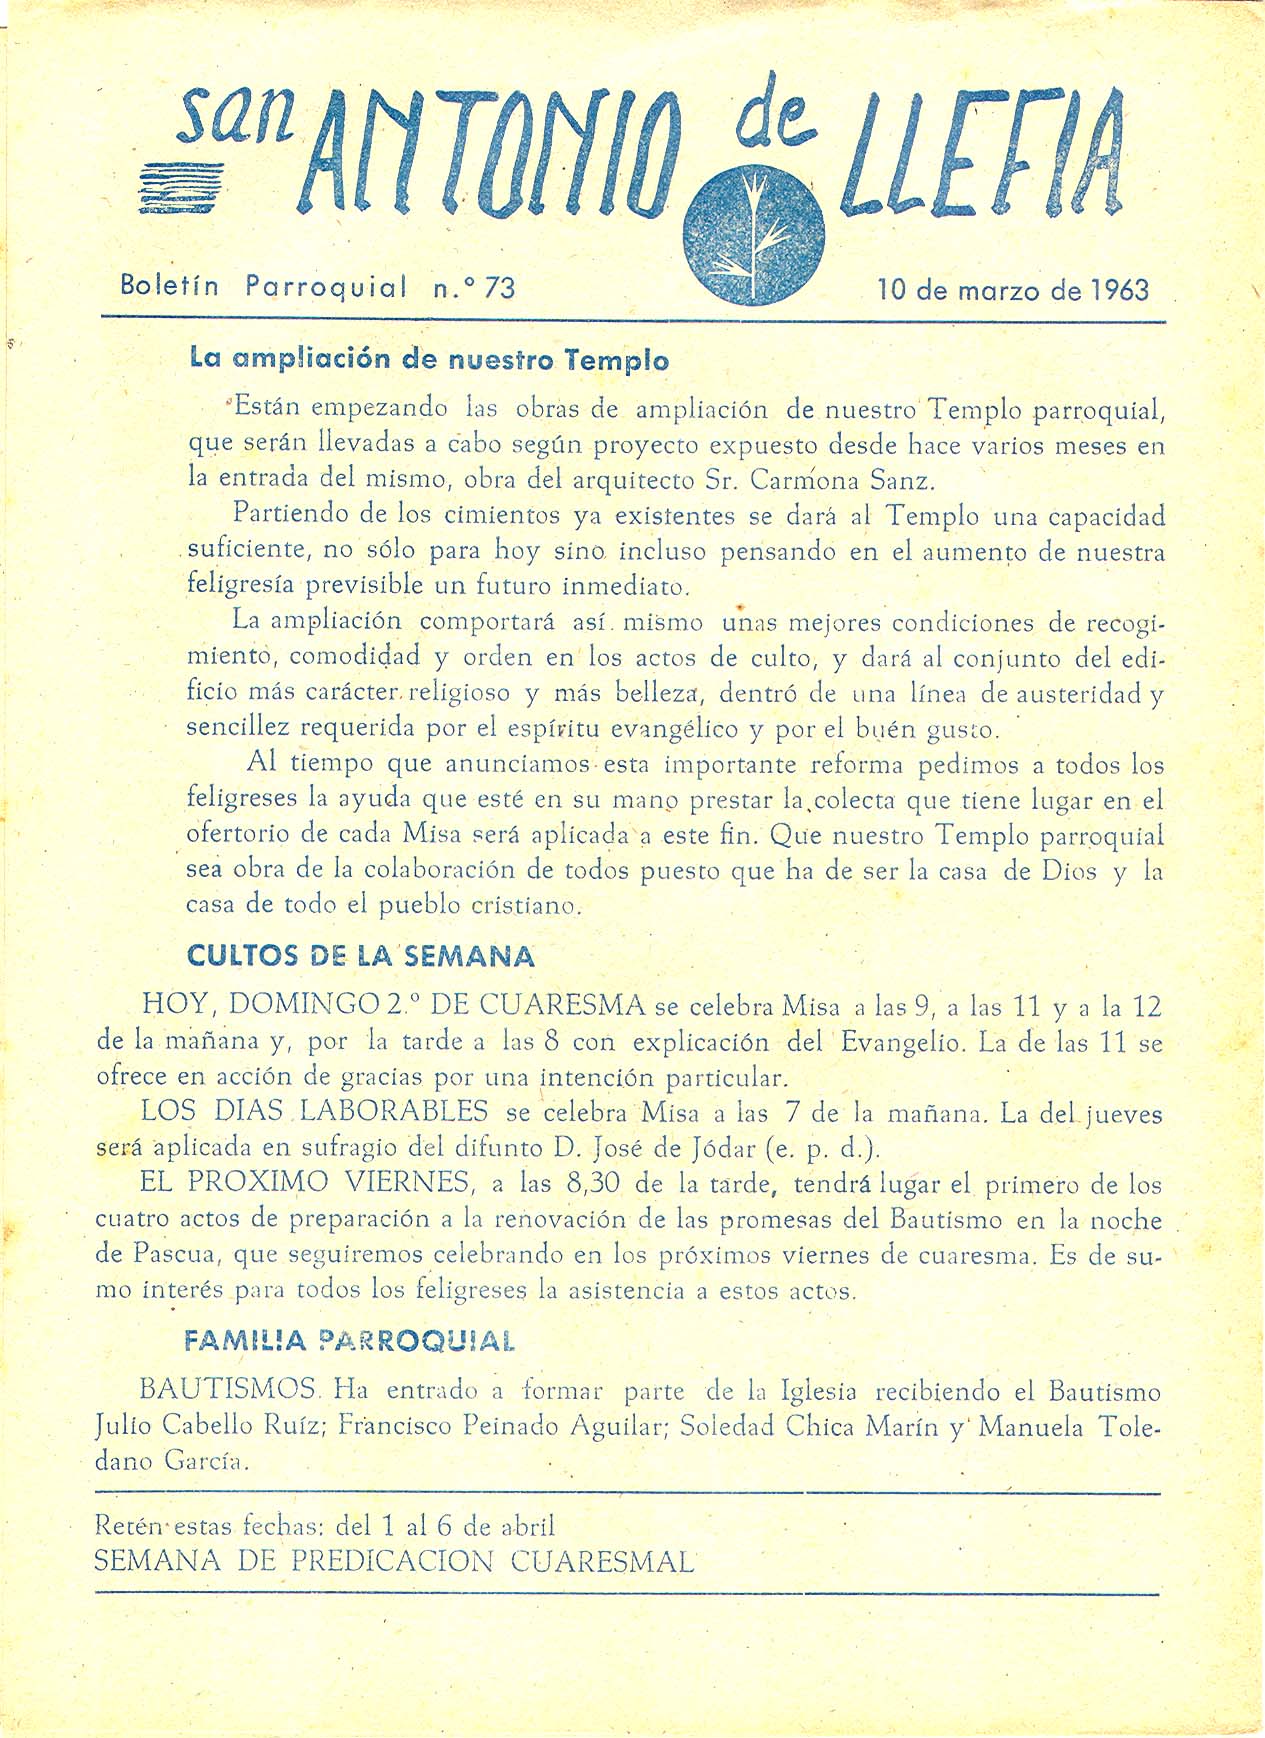 1963 Boletin parroquial nÃºm 73